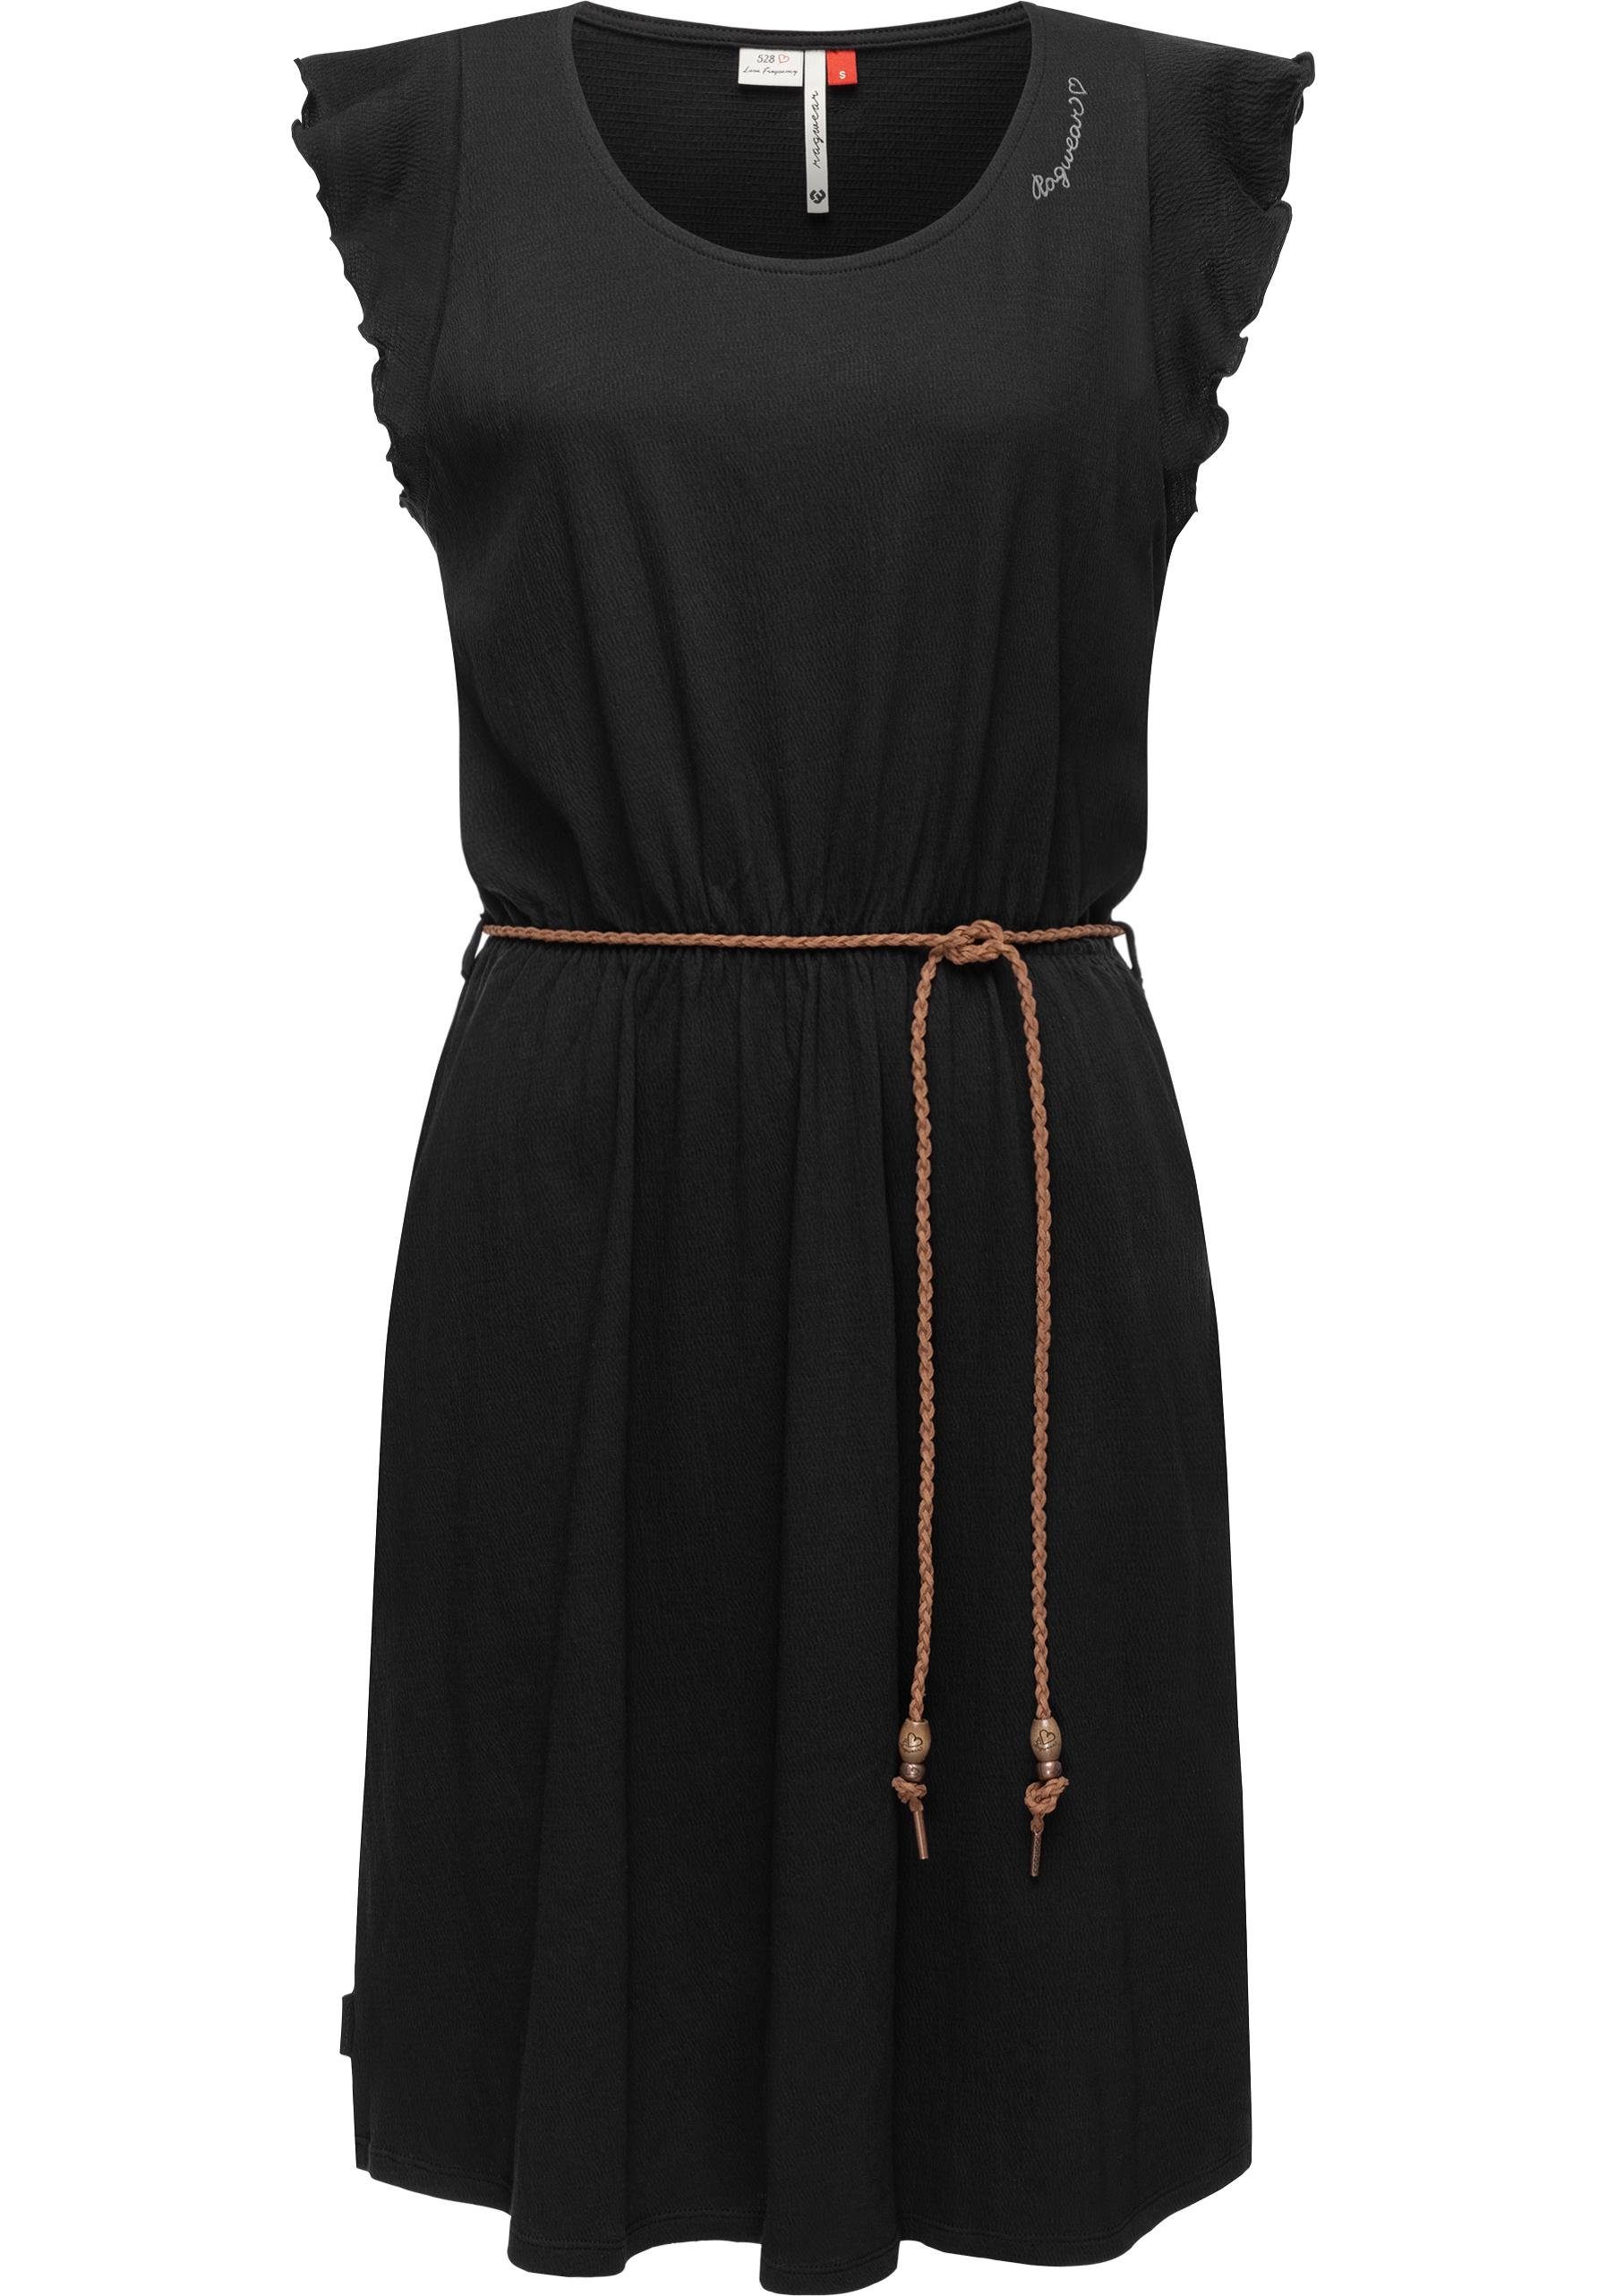 Ragwear Shirtkleid Cellia stylisches Sommerkleid mit Print und hochwertigem Gürtel